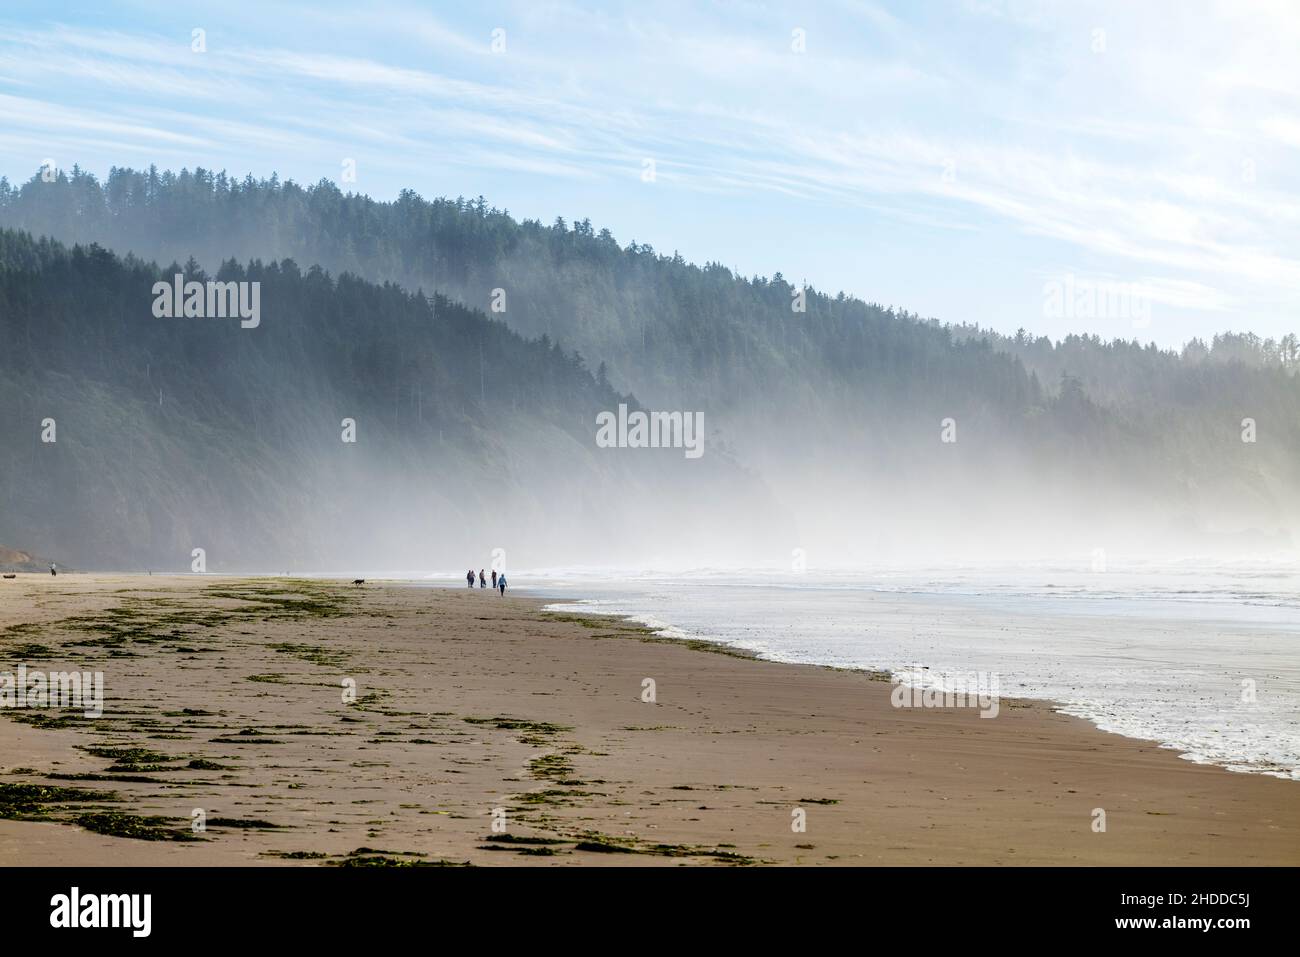 Visiteurs sur la plage ; Cape Lookout State Park ; Océan Pacifique ; côte de l'Oregon ; Etats-Unis Banque D'Images